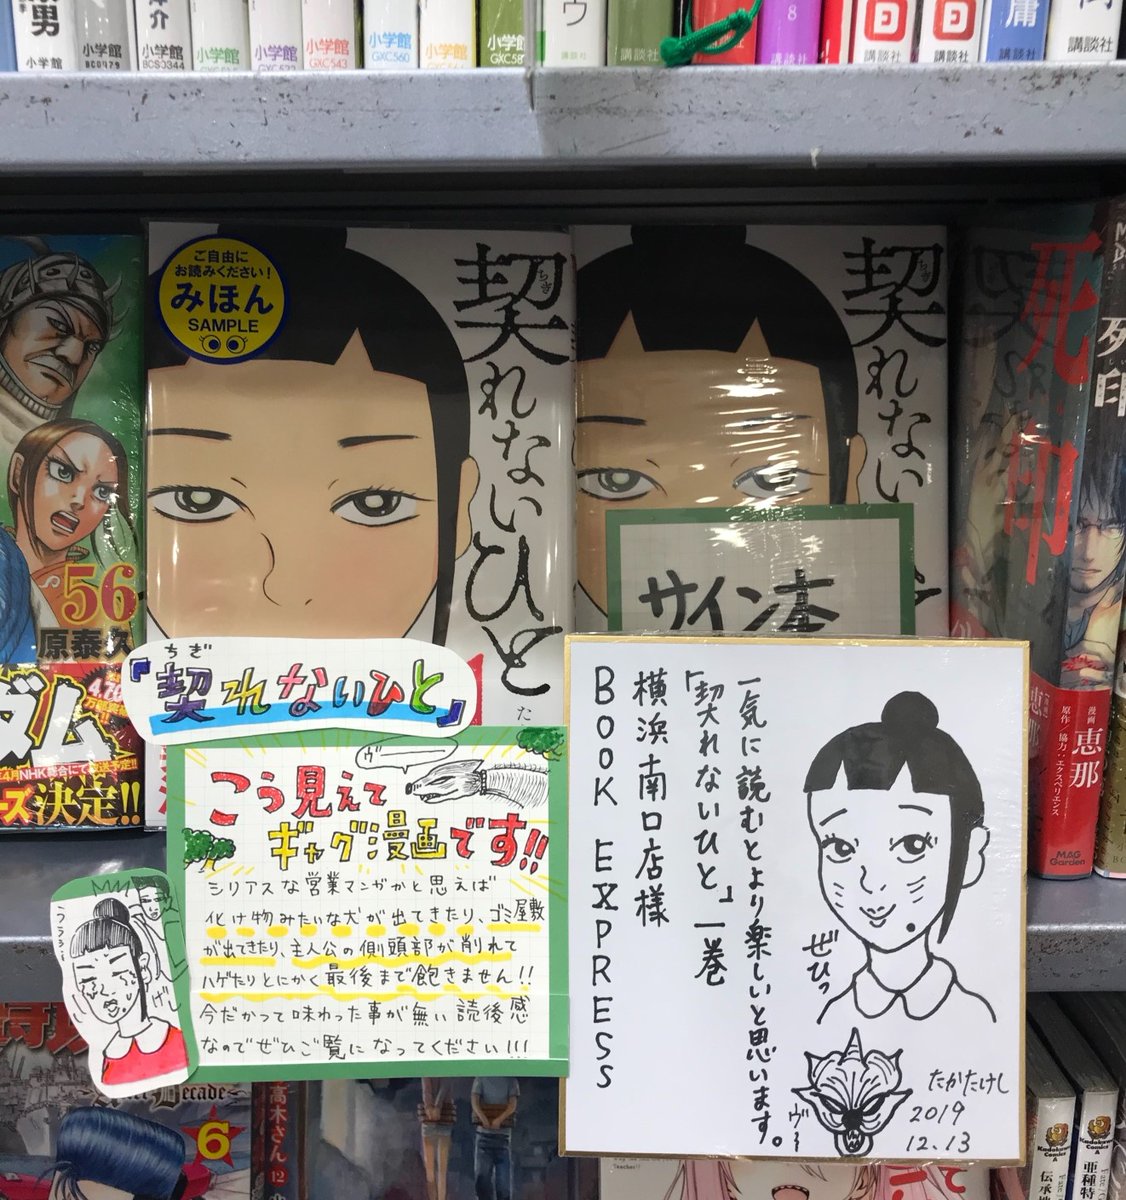 book express 横浜南口店さんに「契れないひと」のサイン本があります。試し読み冊子も作ってくれました(涙)。ぜひお買い求めください。 